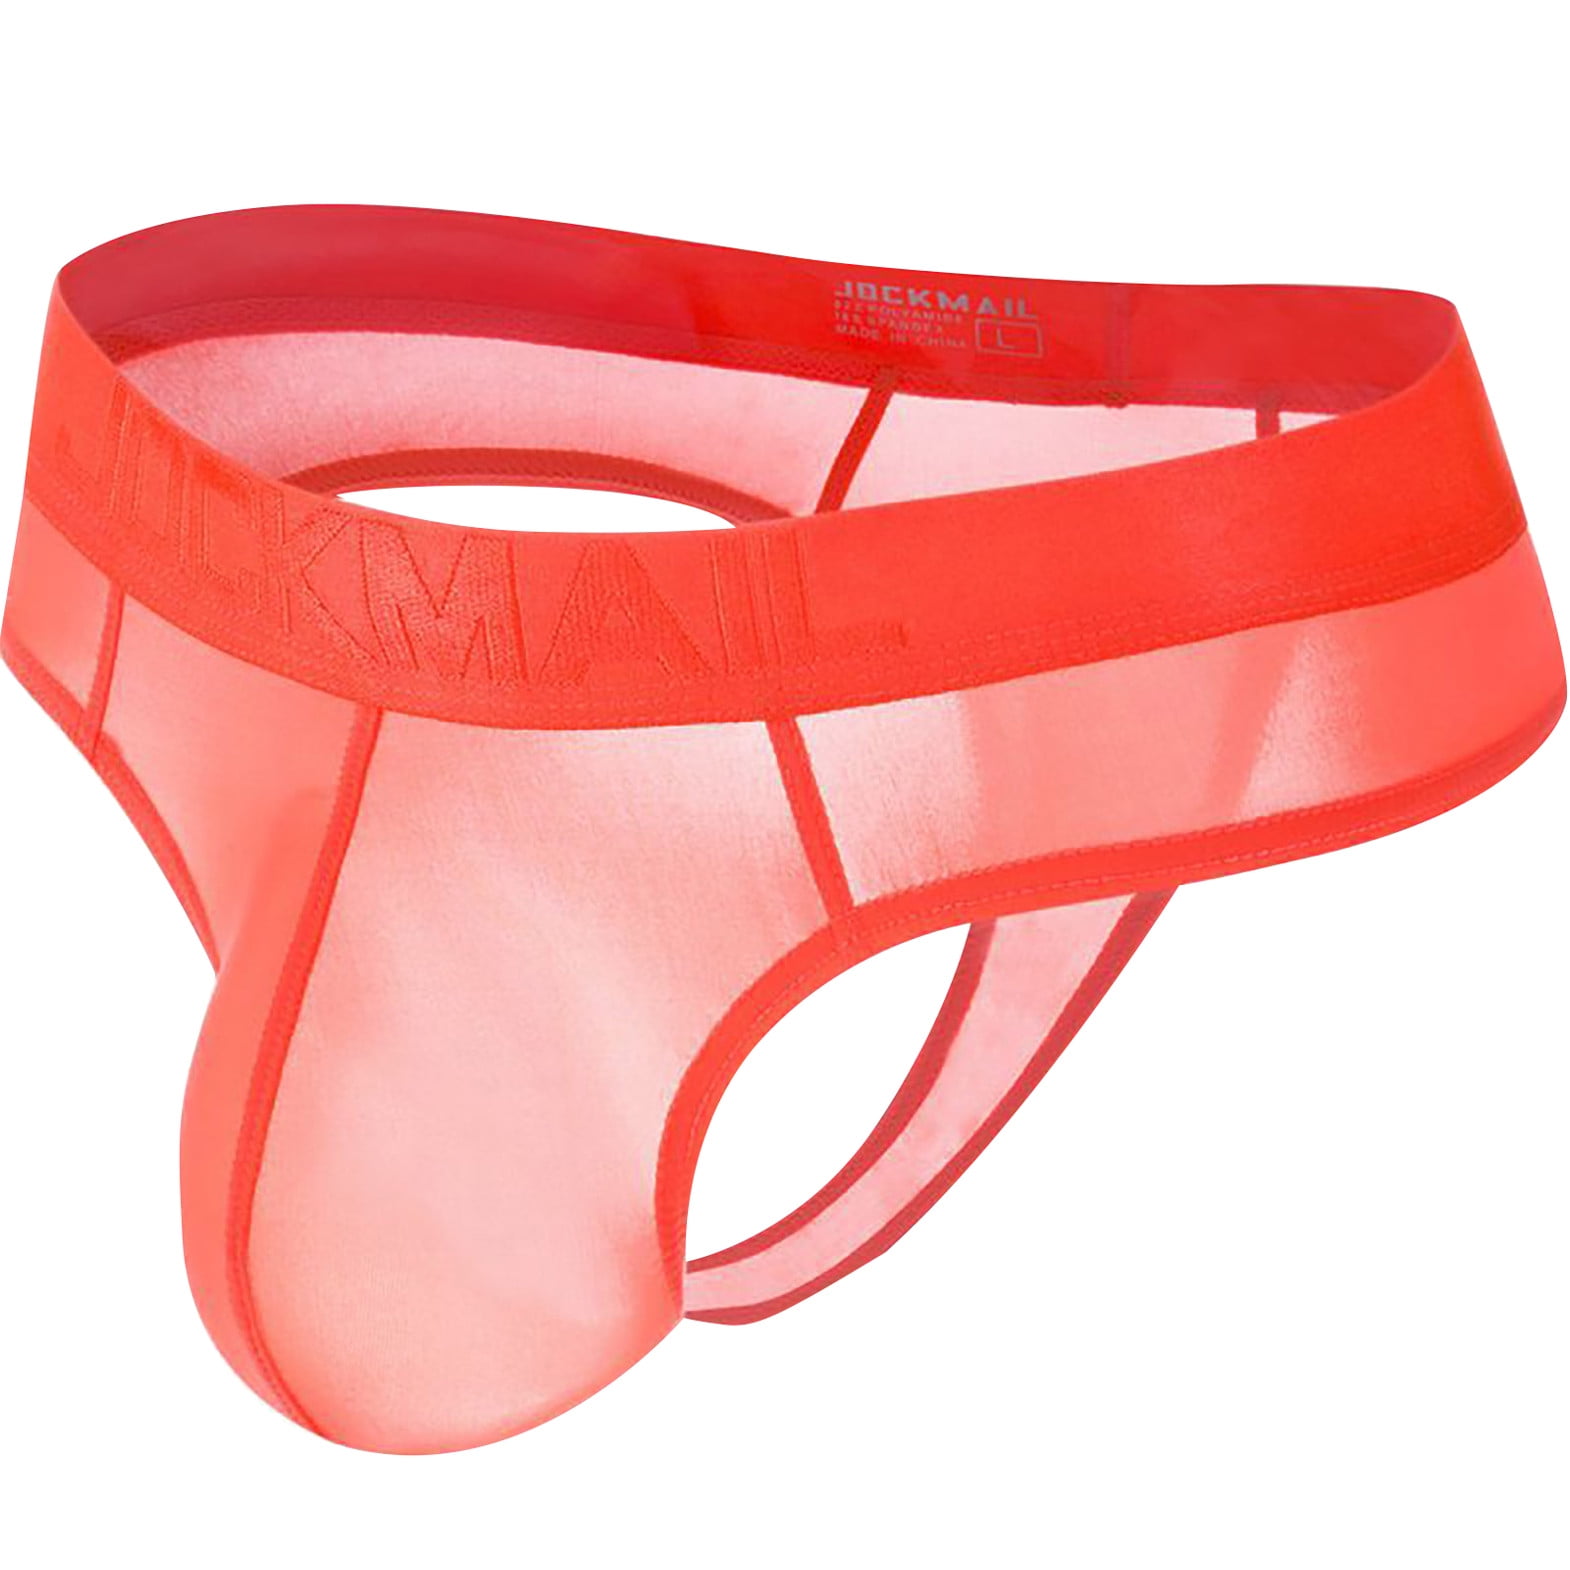 DENGDENG Men's Sexy Thong Jockstrap Comfortsoft Underwear - Walmart.com